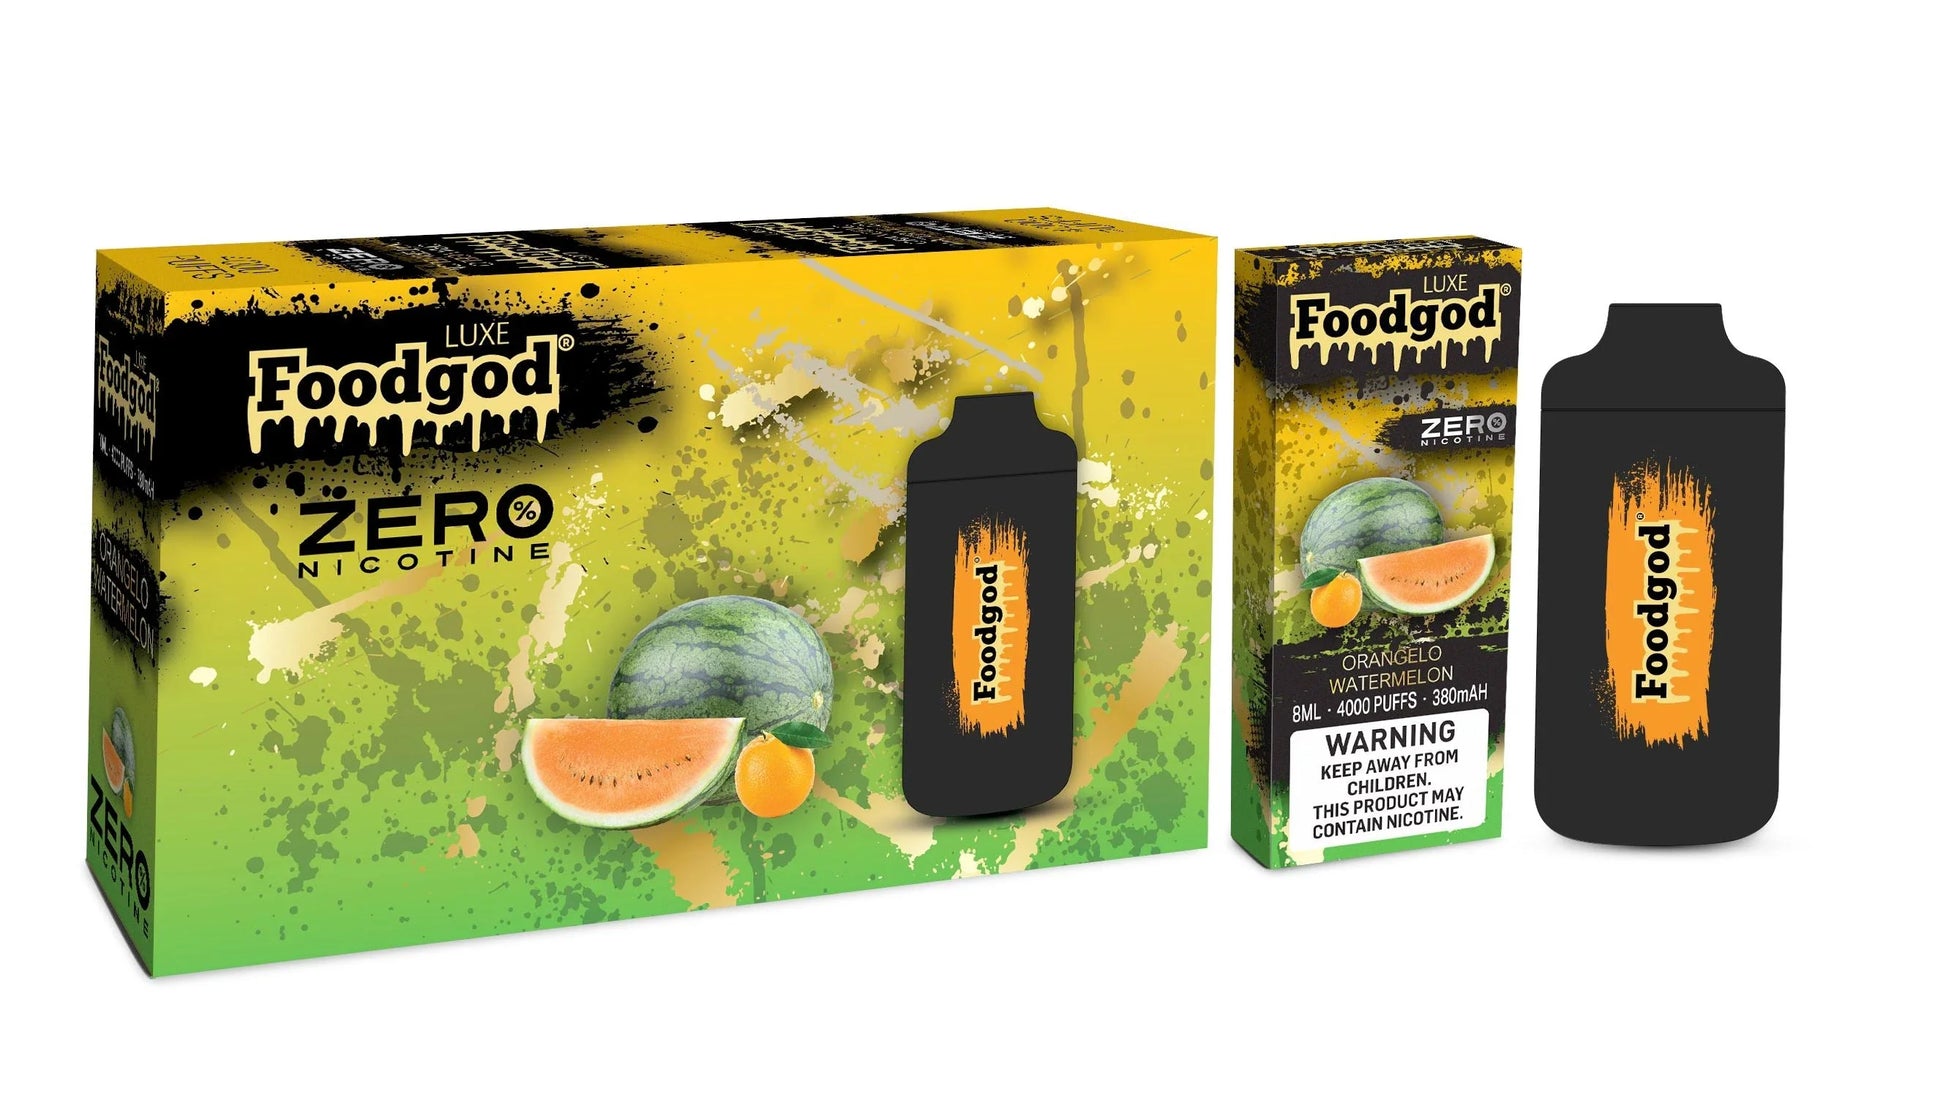 Foodgod Luxe Zero Nicotine Orangelo Watermelon  